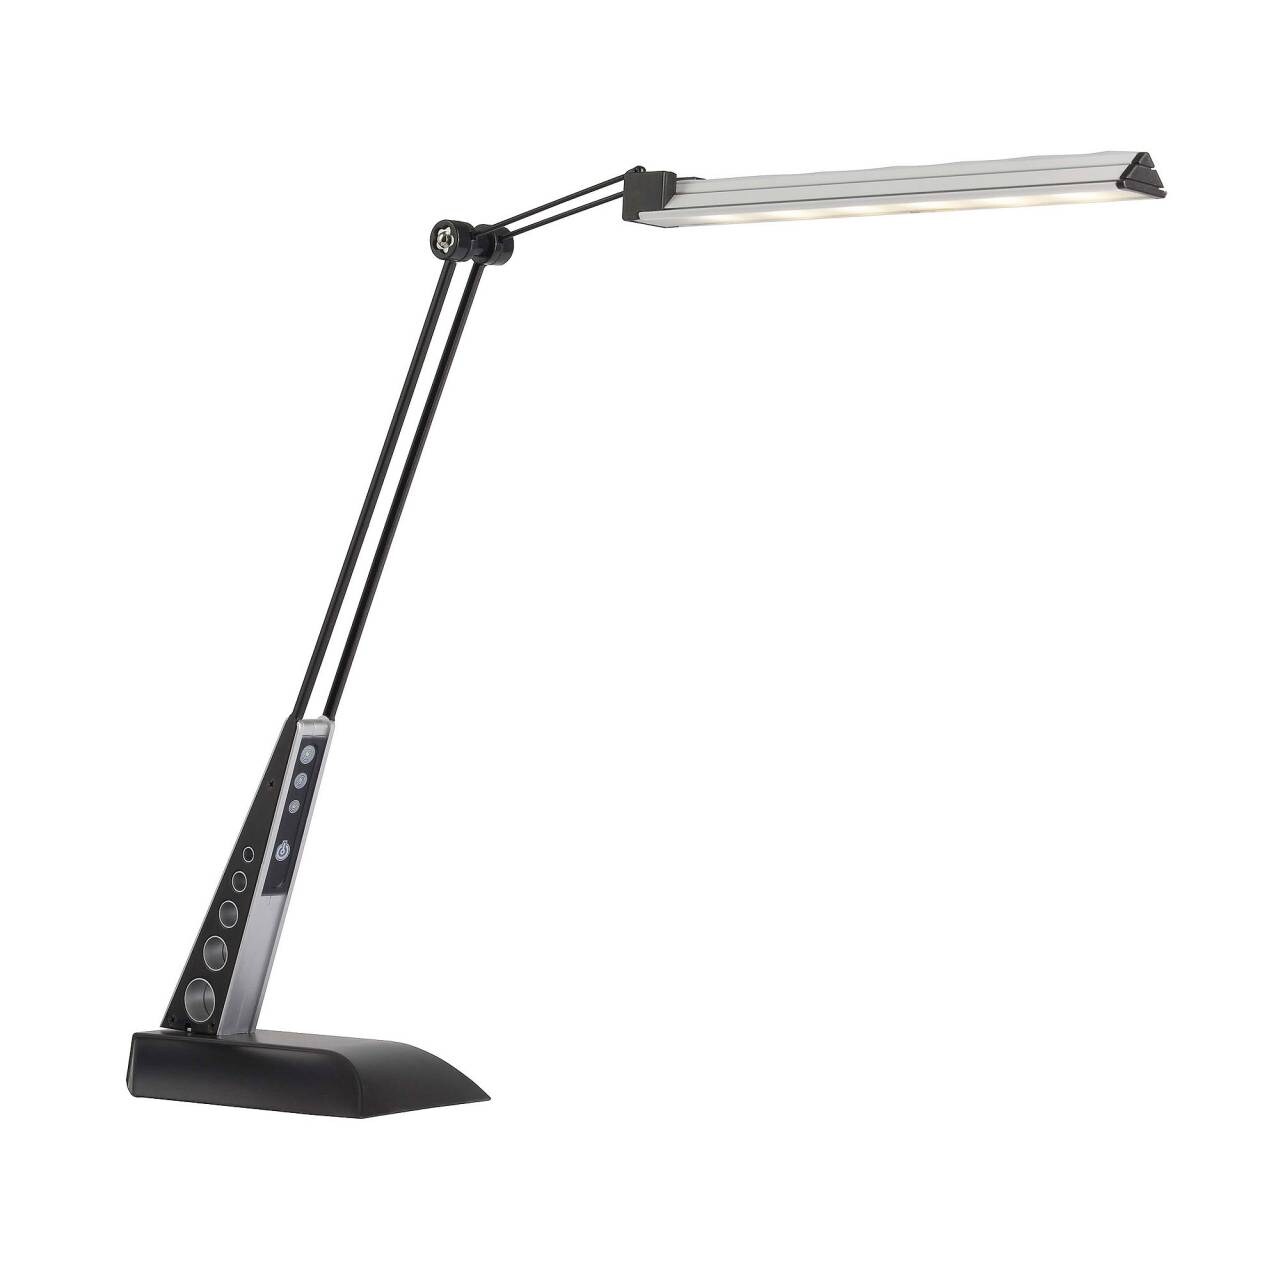 BRILLIANT Lampe Jaap LED Schreibtischleuchte schwarz/chrom   1x 6W LED integriert, (420lm, 5500K)   Mit 3-Stufen-Touchdi